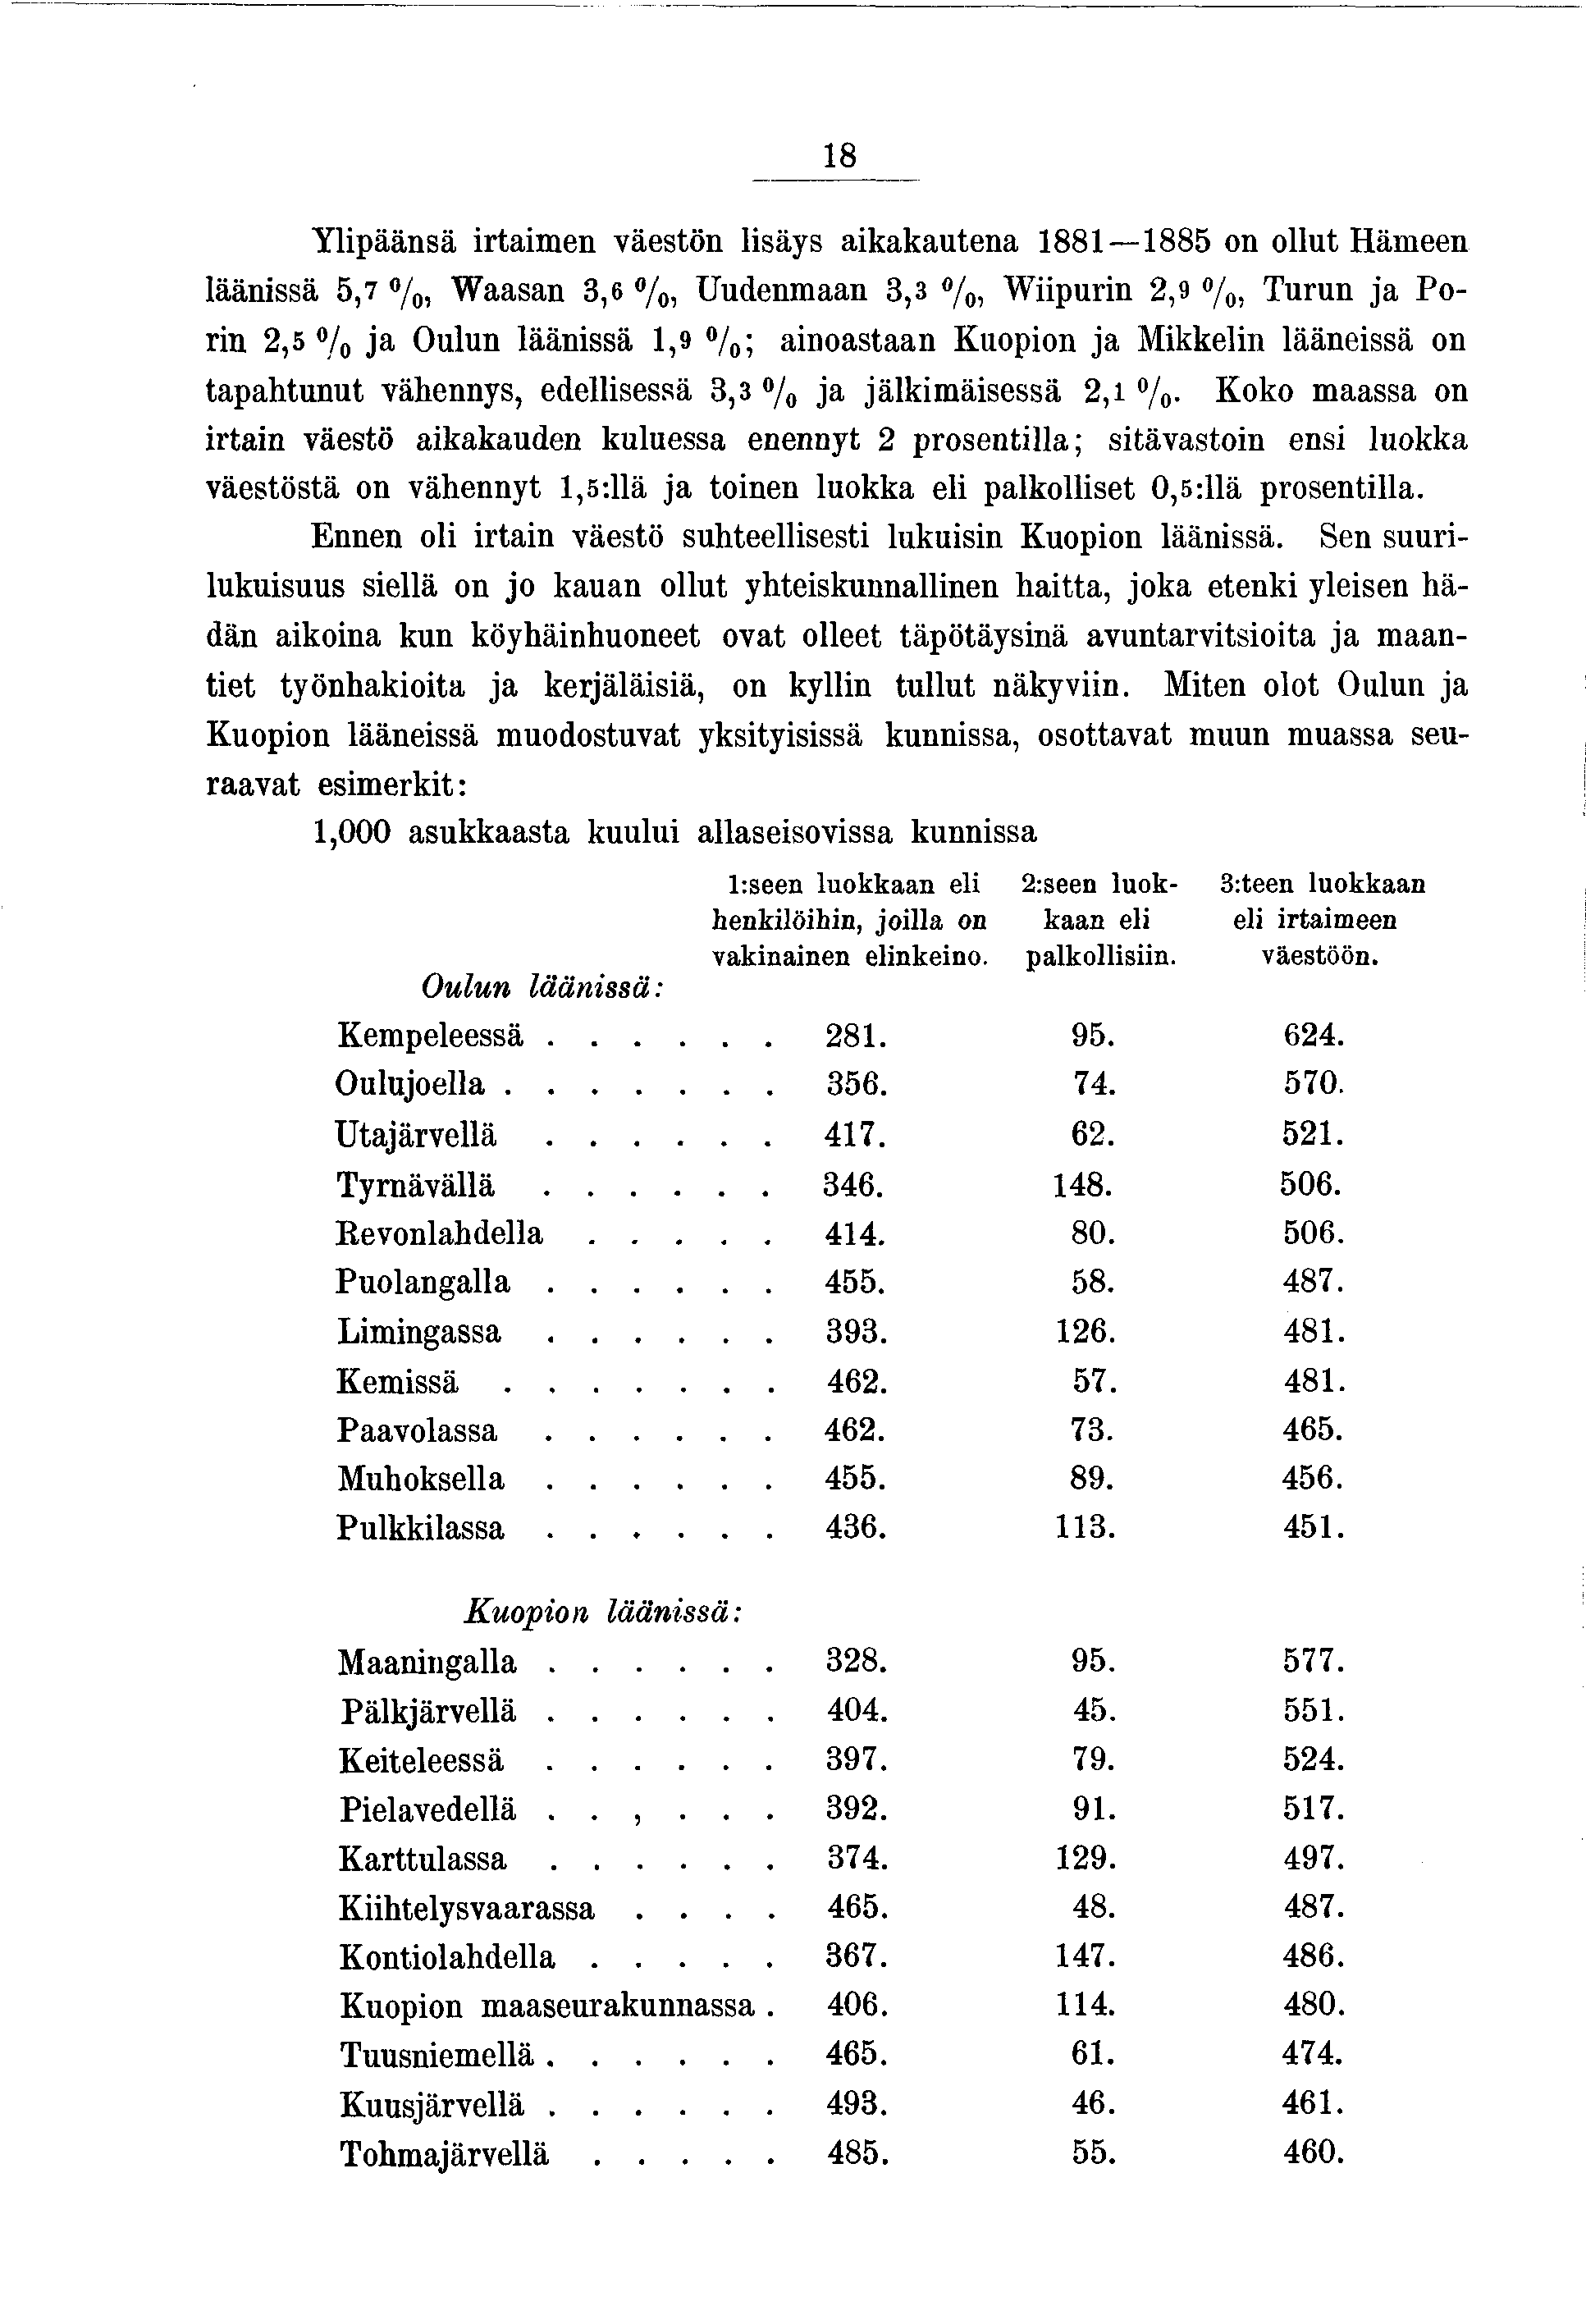 8 Ylpäänsä rtamen väestön lsäys akakautena 88 885 on ollut Hämeen läänssä 5,7 /0, W aasan 3,6 %, Uudenmaan 3,3 /0, Wpurn 2,9 /0) Turun a Porn 2,5 % a Oulun läänssä,9 /0; anoastaan Kuopon a Mkkeln